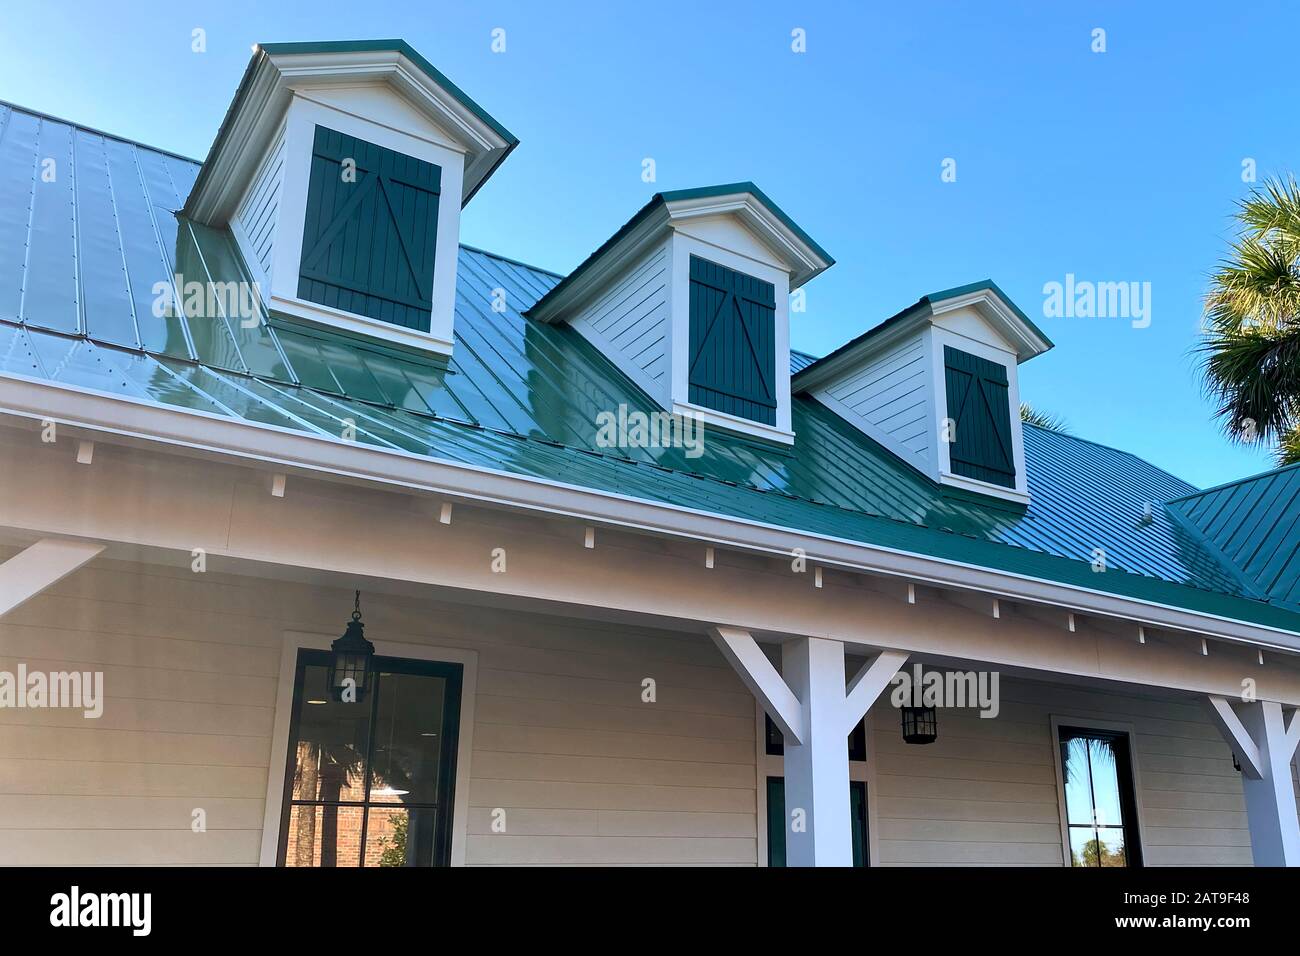 Eine Dachlinie des südlichen Hauses mit 3 Giebeln und grünen Schindeln Stockfoto